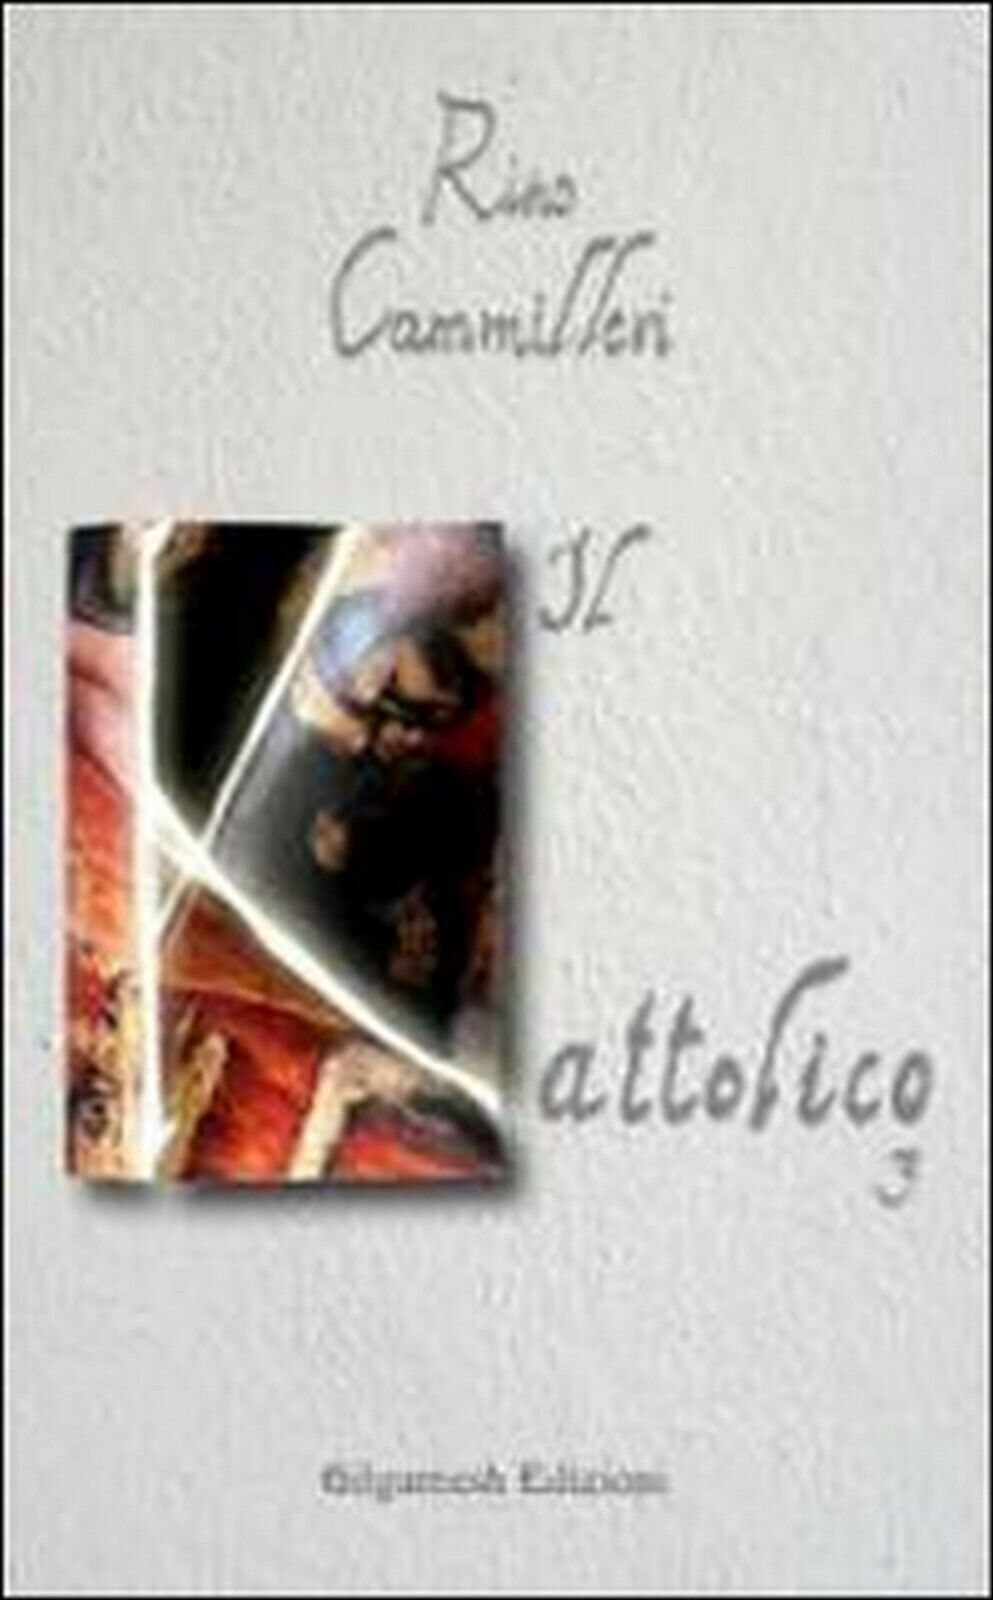 Il Kattolico Vol.3  di Rino Cammilleri,  2020,  Gilgamesh Edizioni